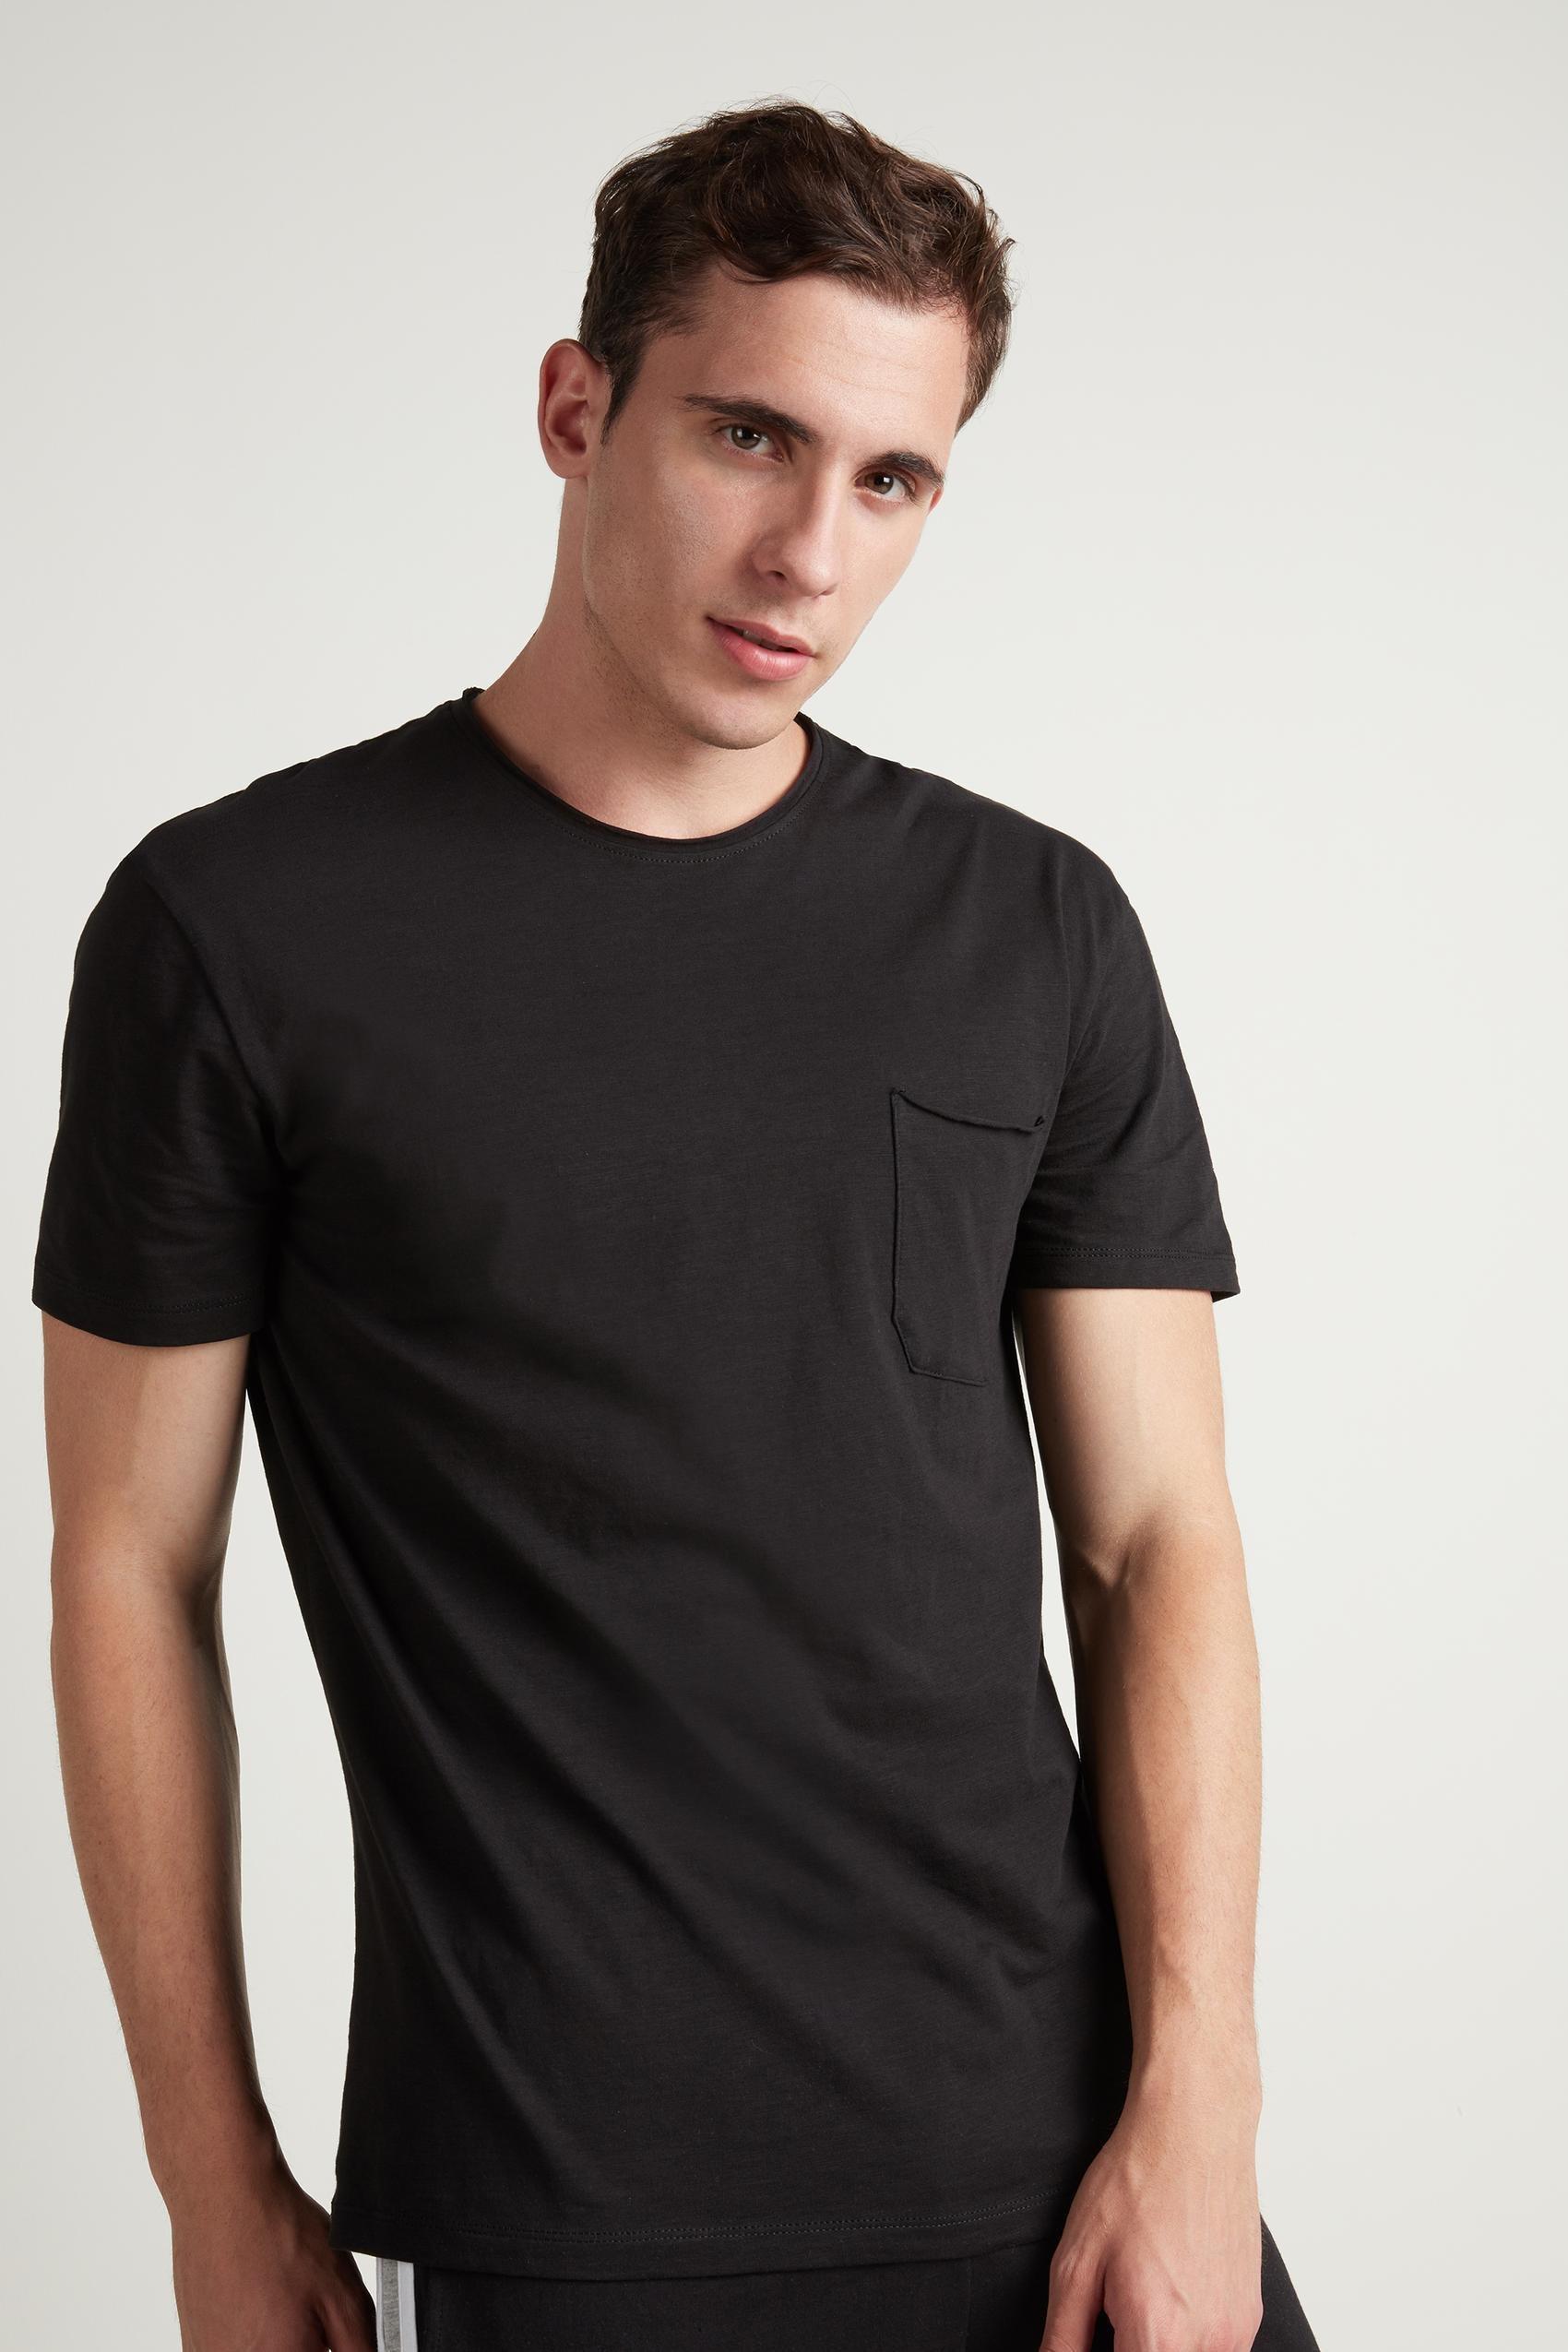 Tezenis - Black Cotton Pocket T-Shirt